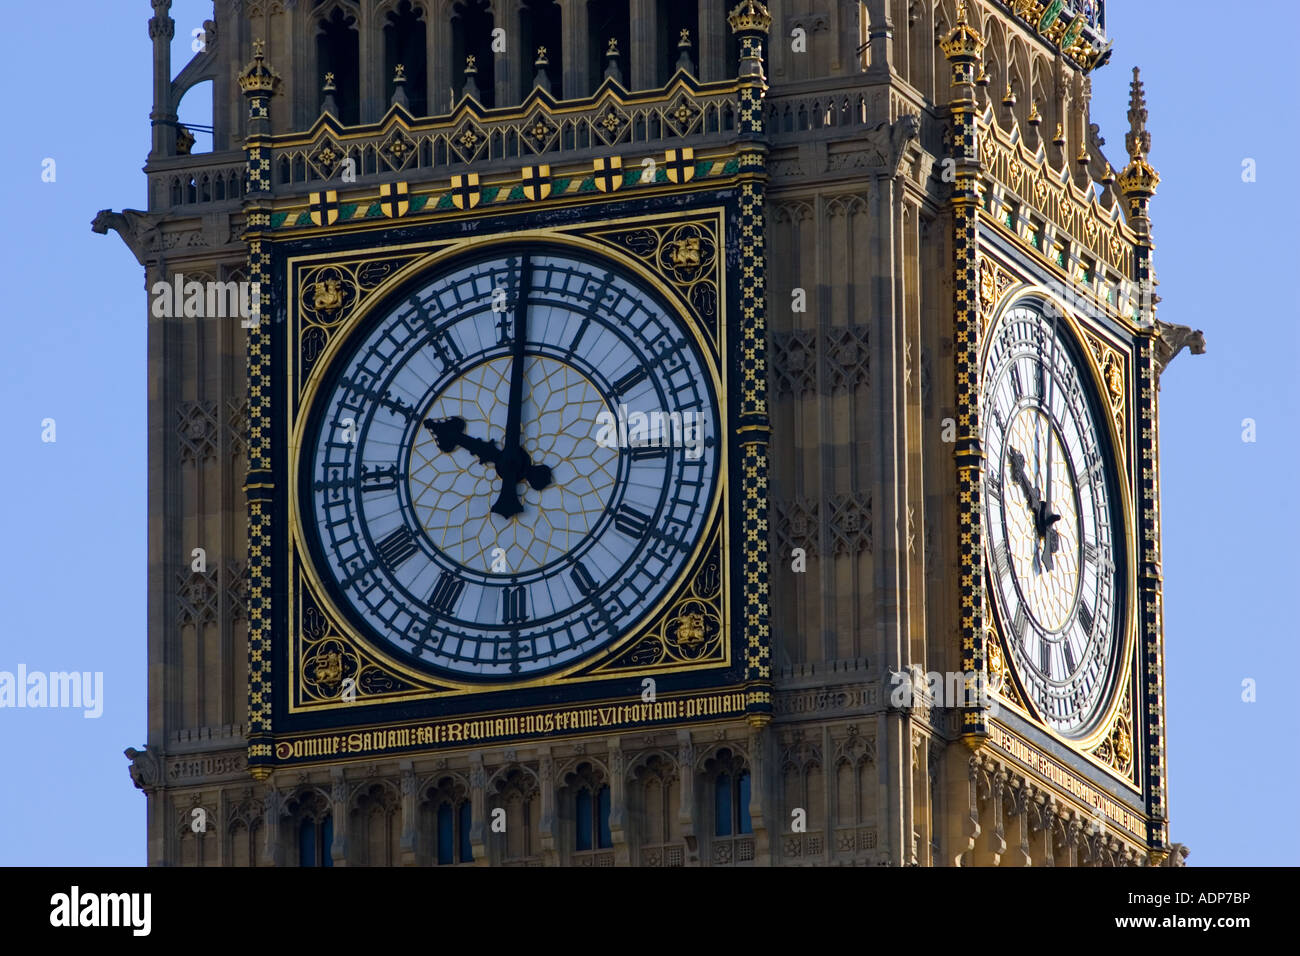 Big Ben und Uhr in St. Stephen s Tower London Vereinigtes Königreich  Stockfotografie - Alamy